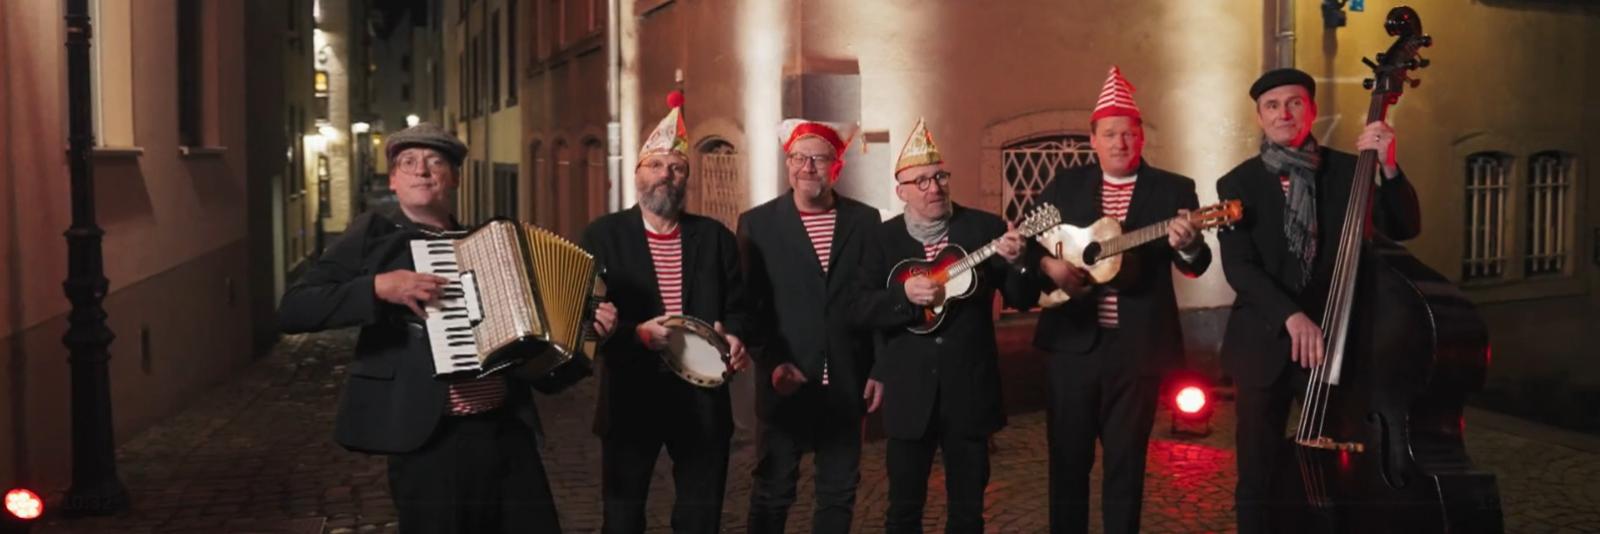 ALAAF! – 200 Jahre Kölner Karneval